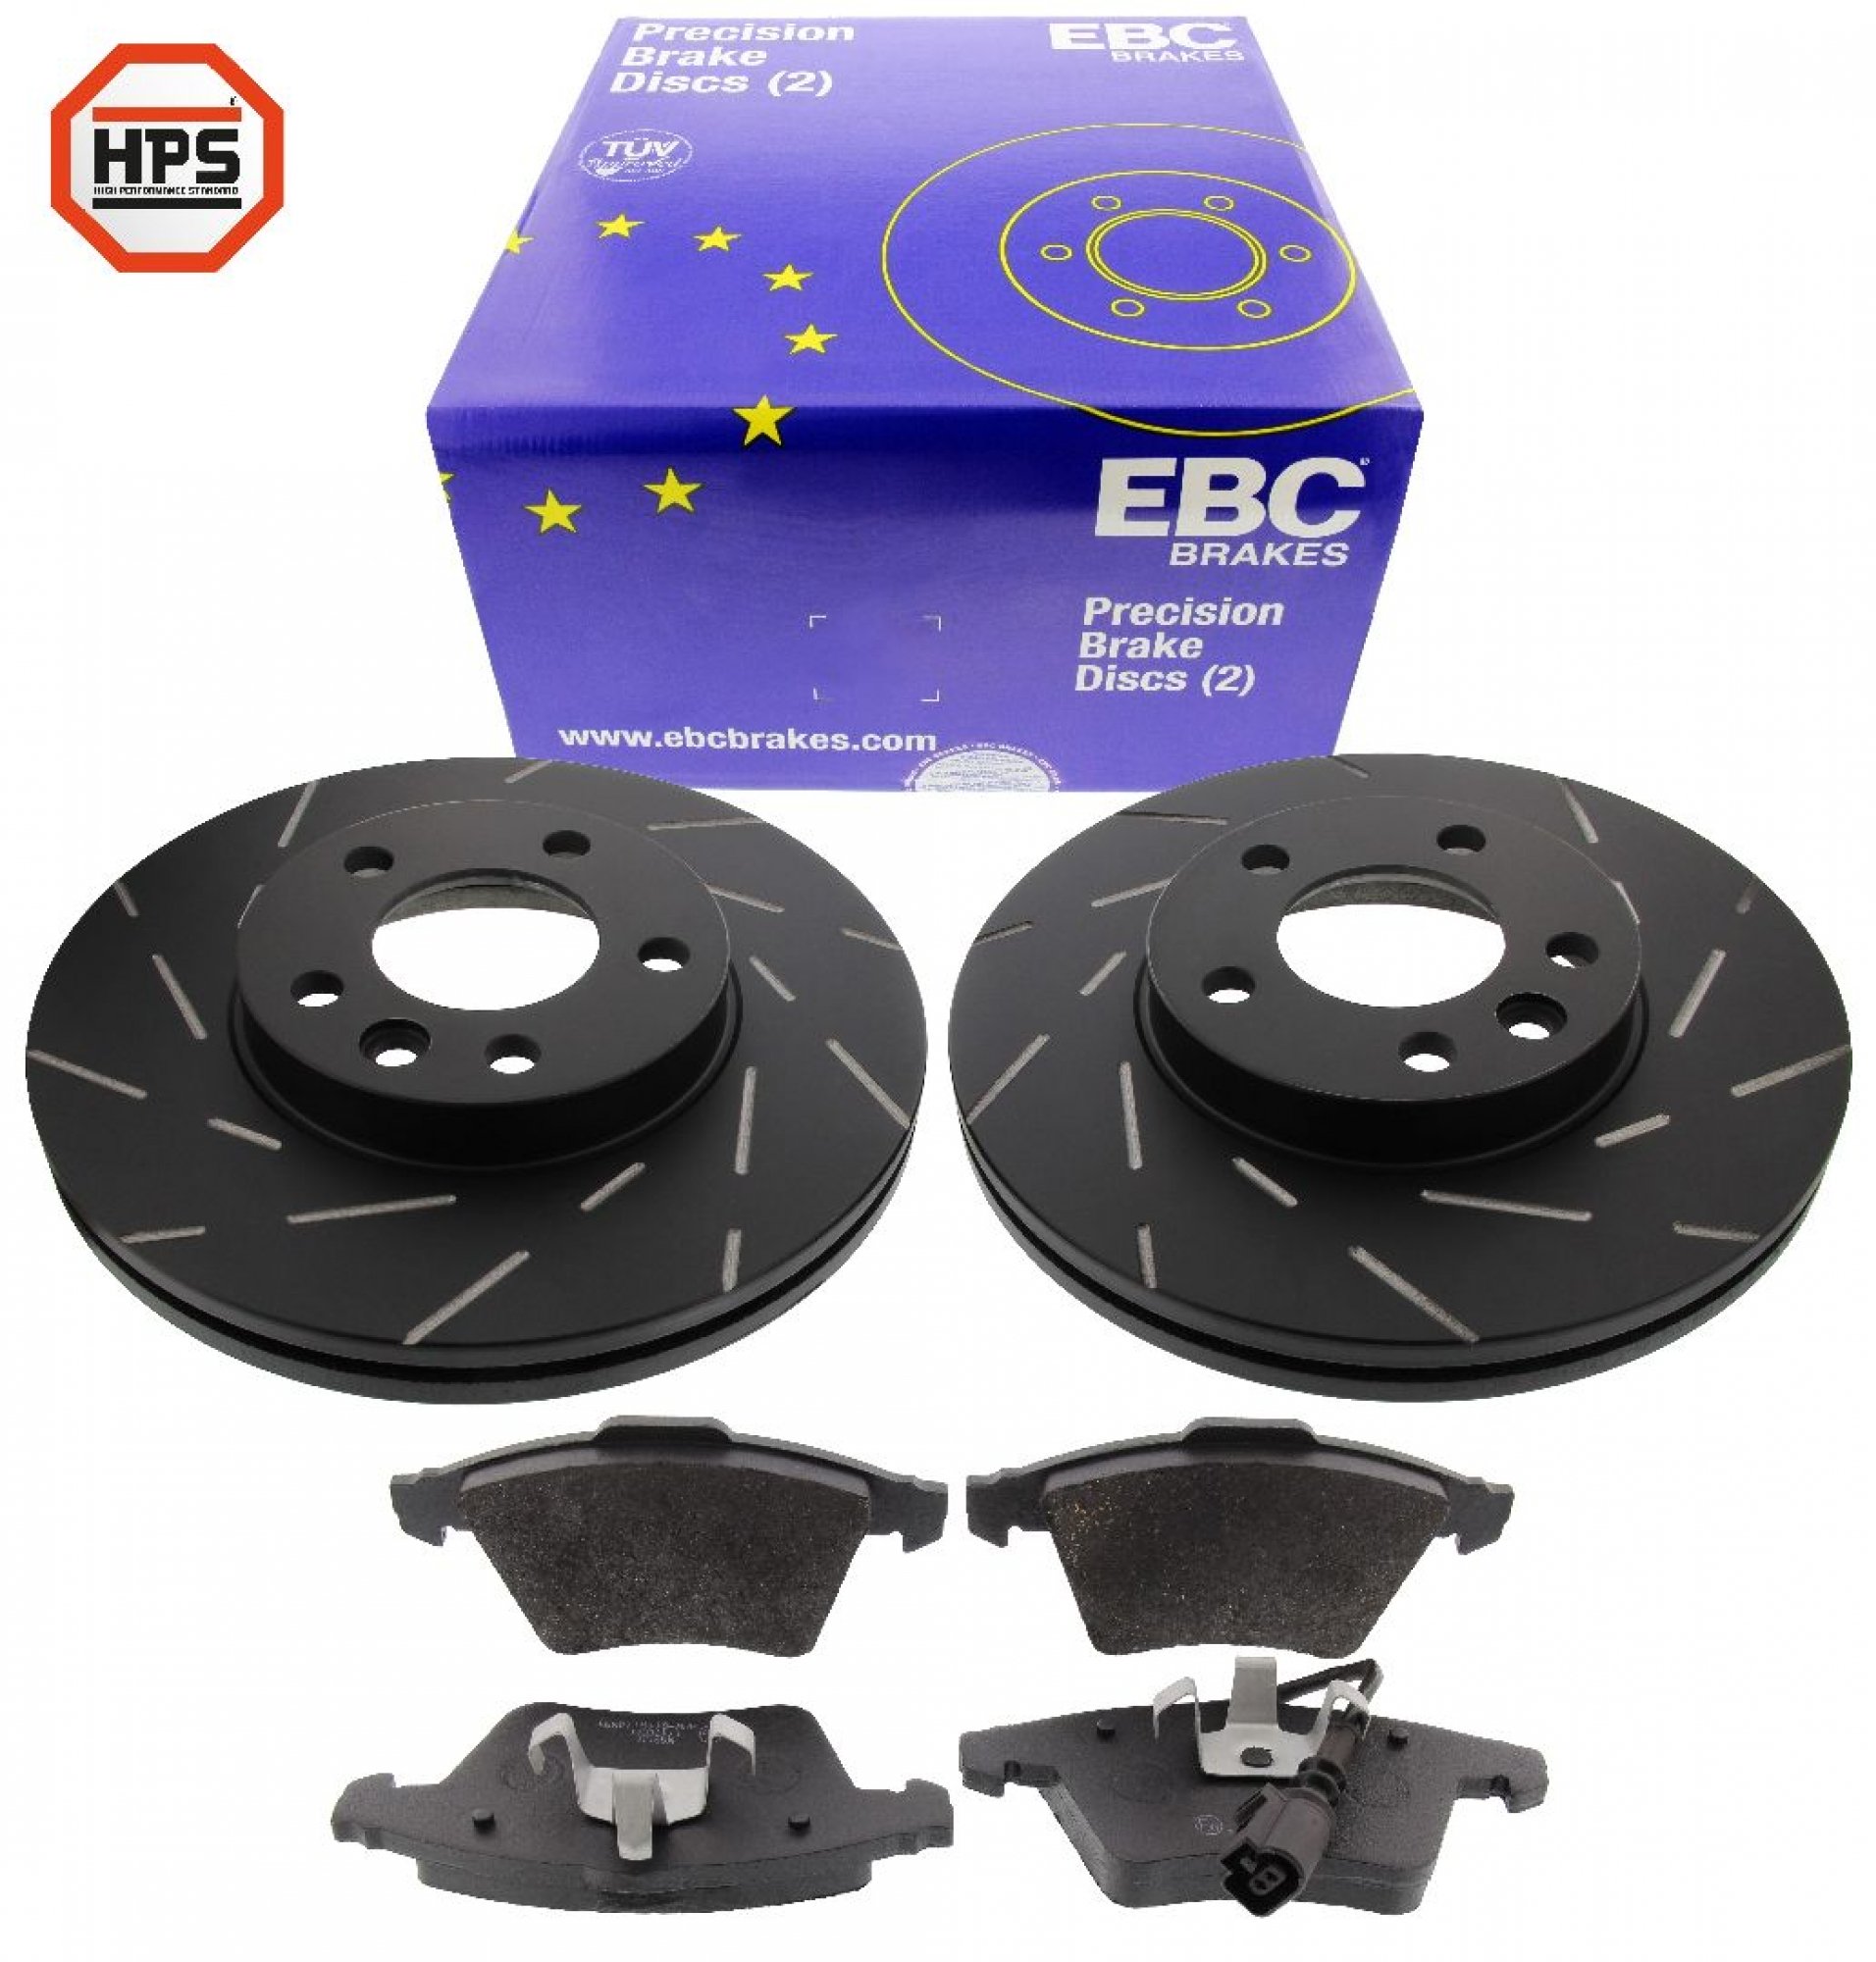 EBC-Bremsensatz, Black Dash Disc + HPS-Carbon-Bremsbelägen von MAPCO, Achssatz, VA, VW Transporter